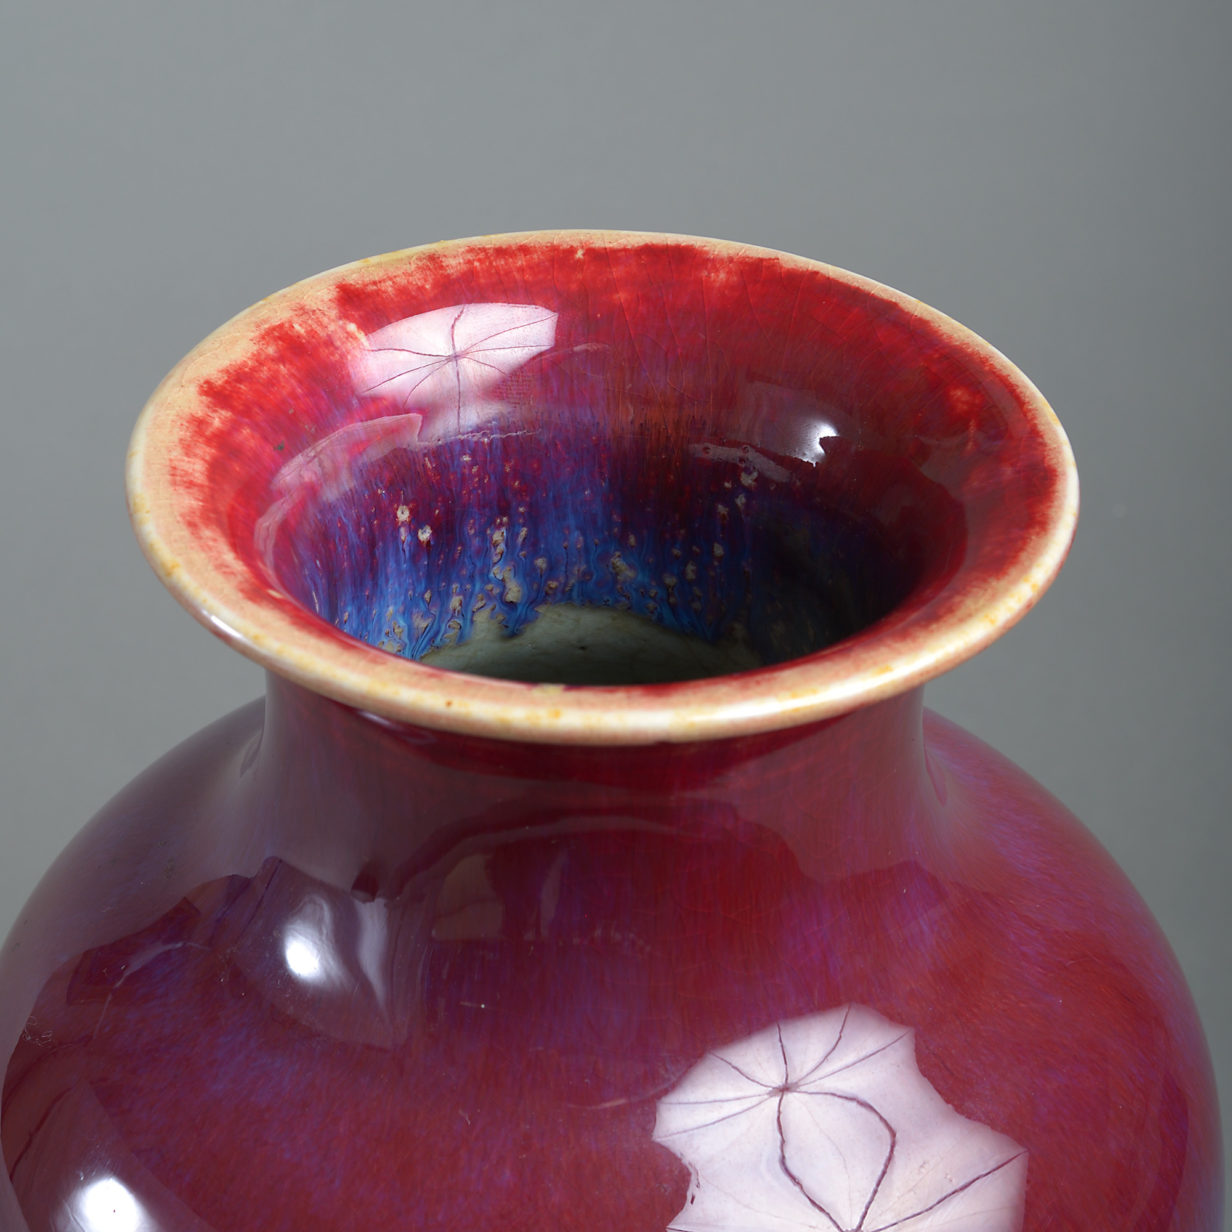 A 19th century sang de boeuf porcelain vase